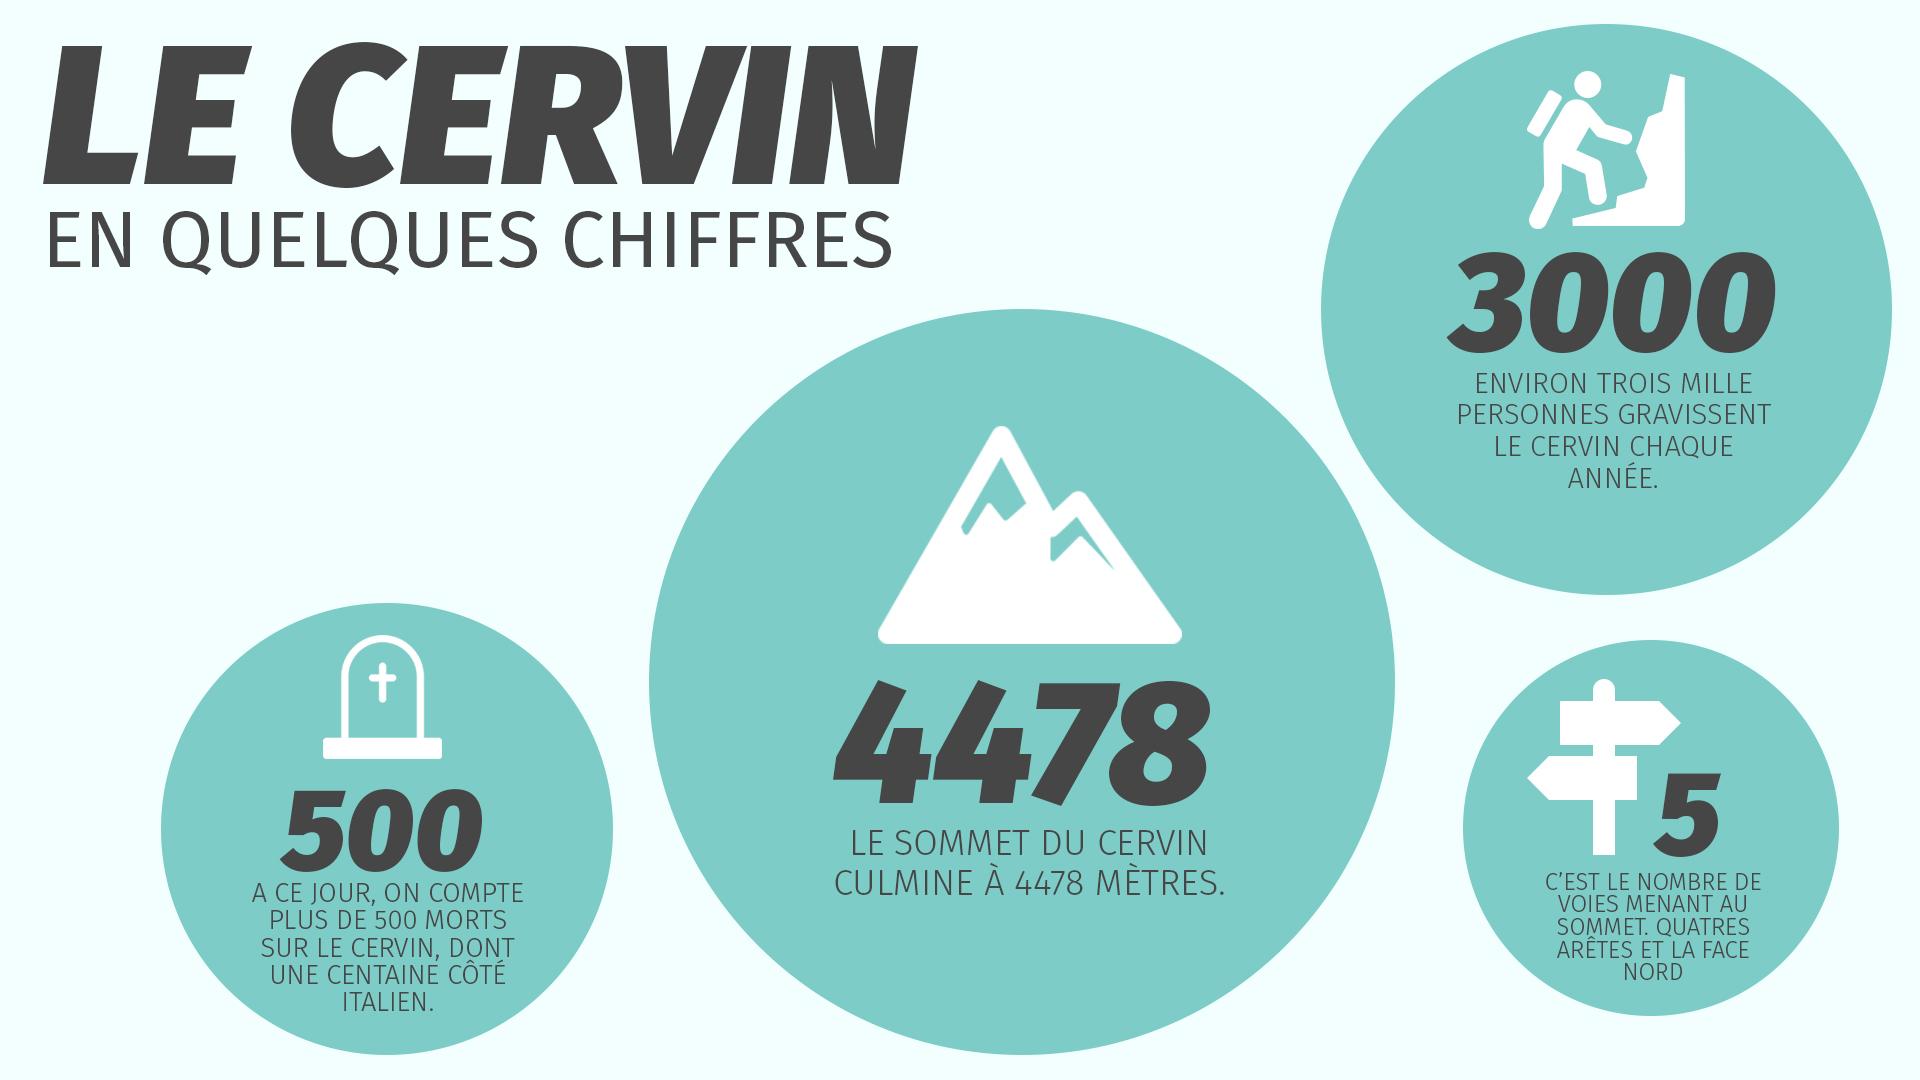 Le Cervin en quelques chiffres [RTS - Agnès Rubin]